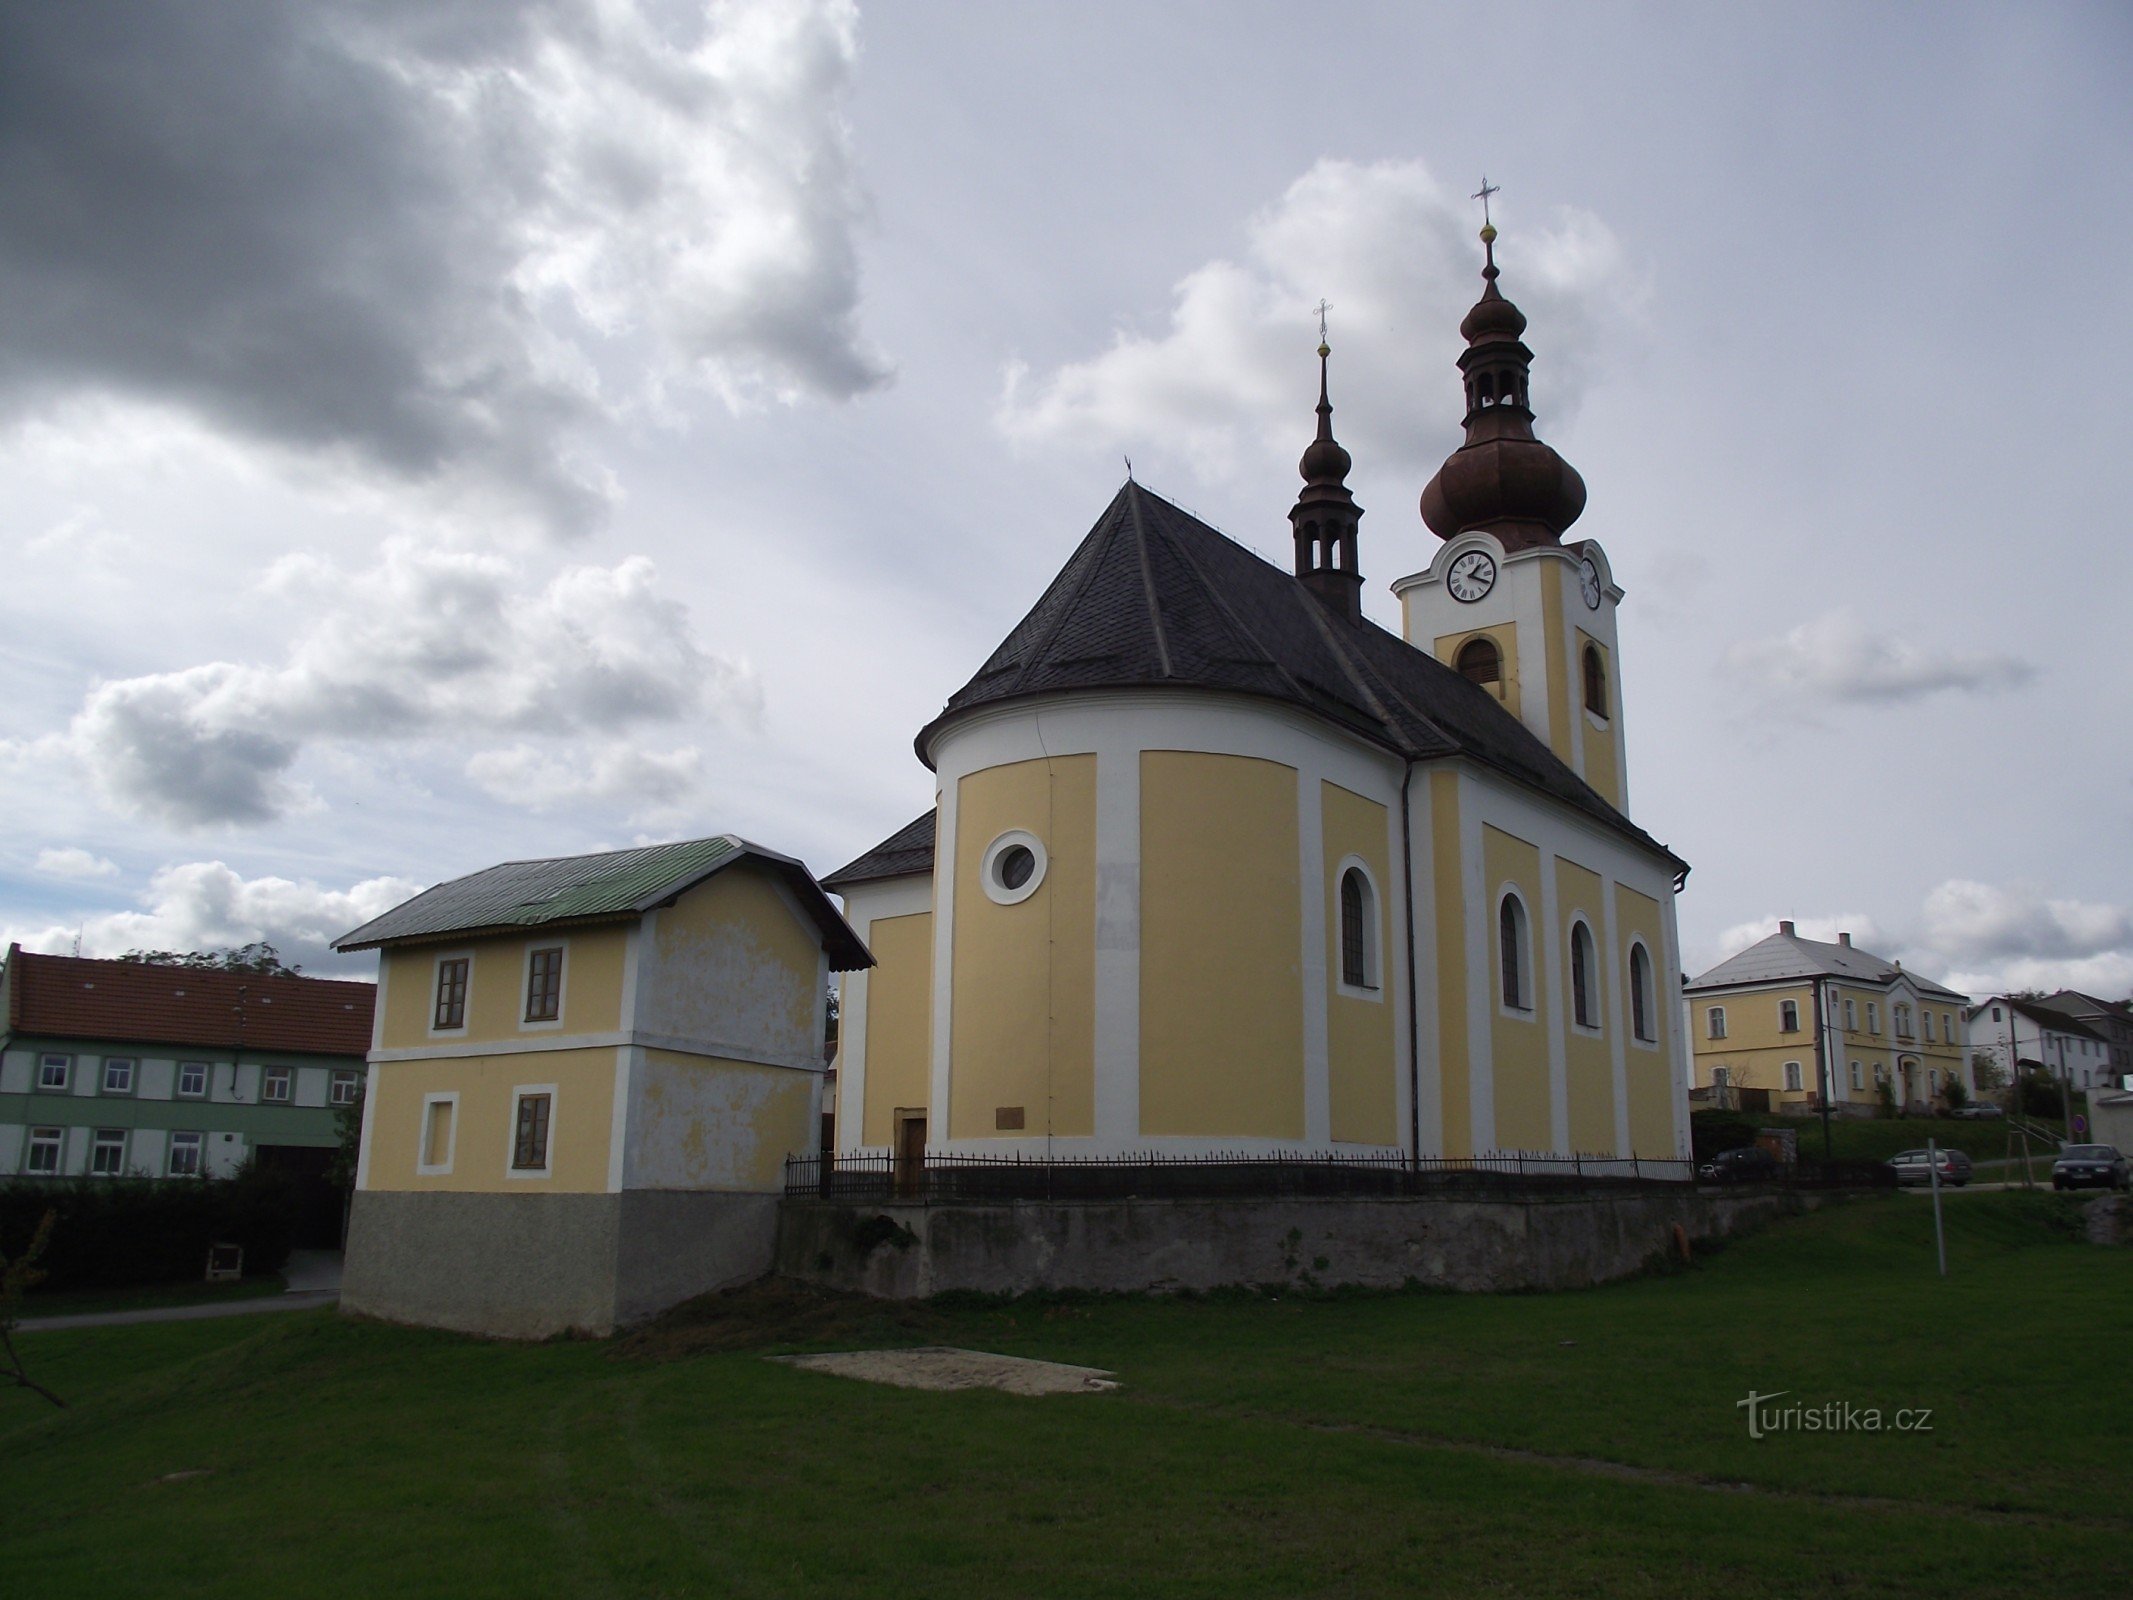 Vilémov – Pyhän pyhän kirkko Catherine